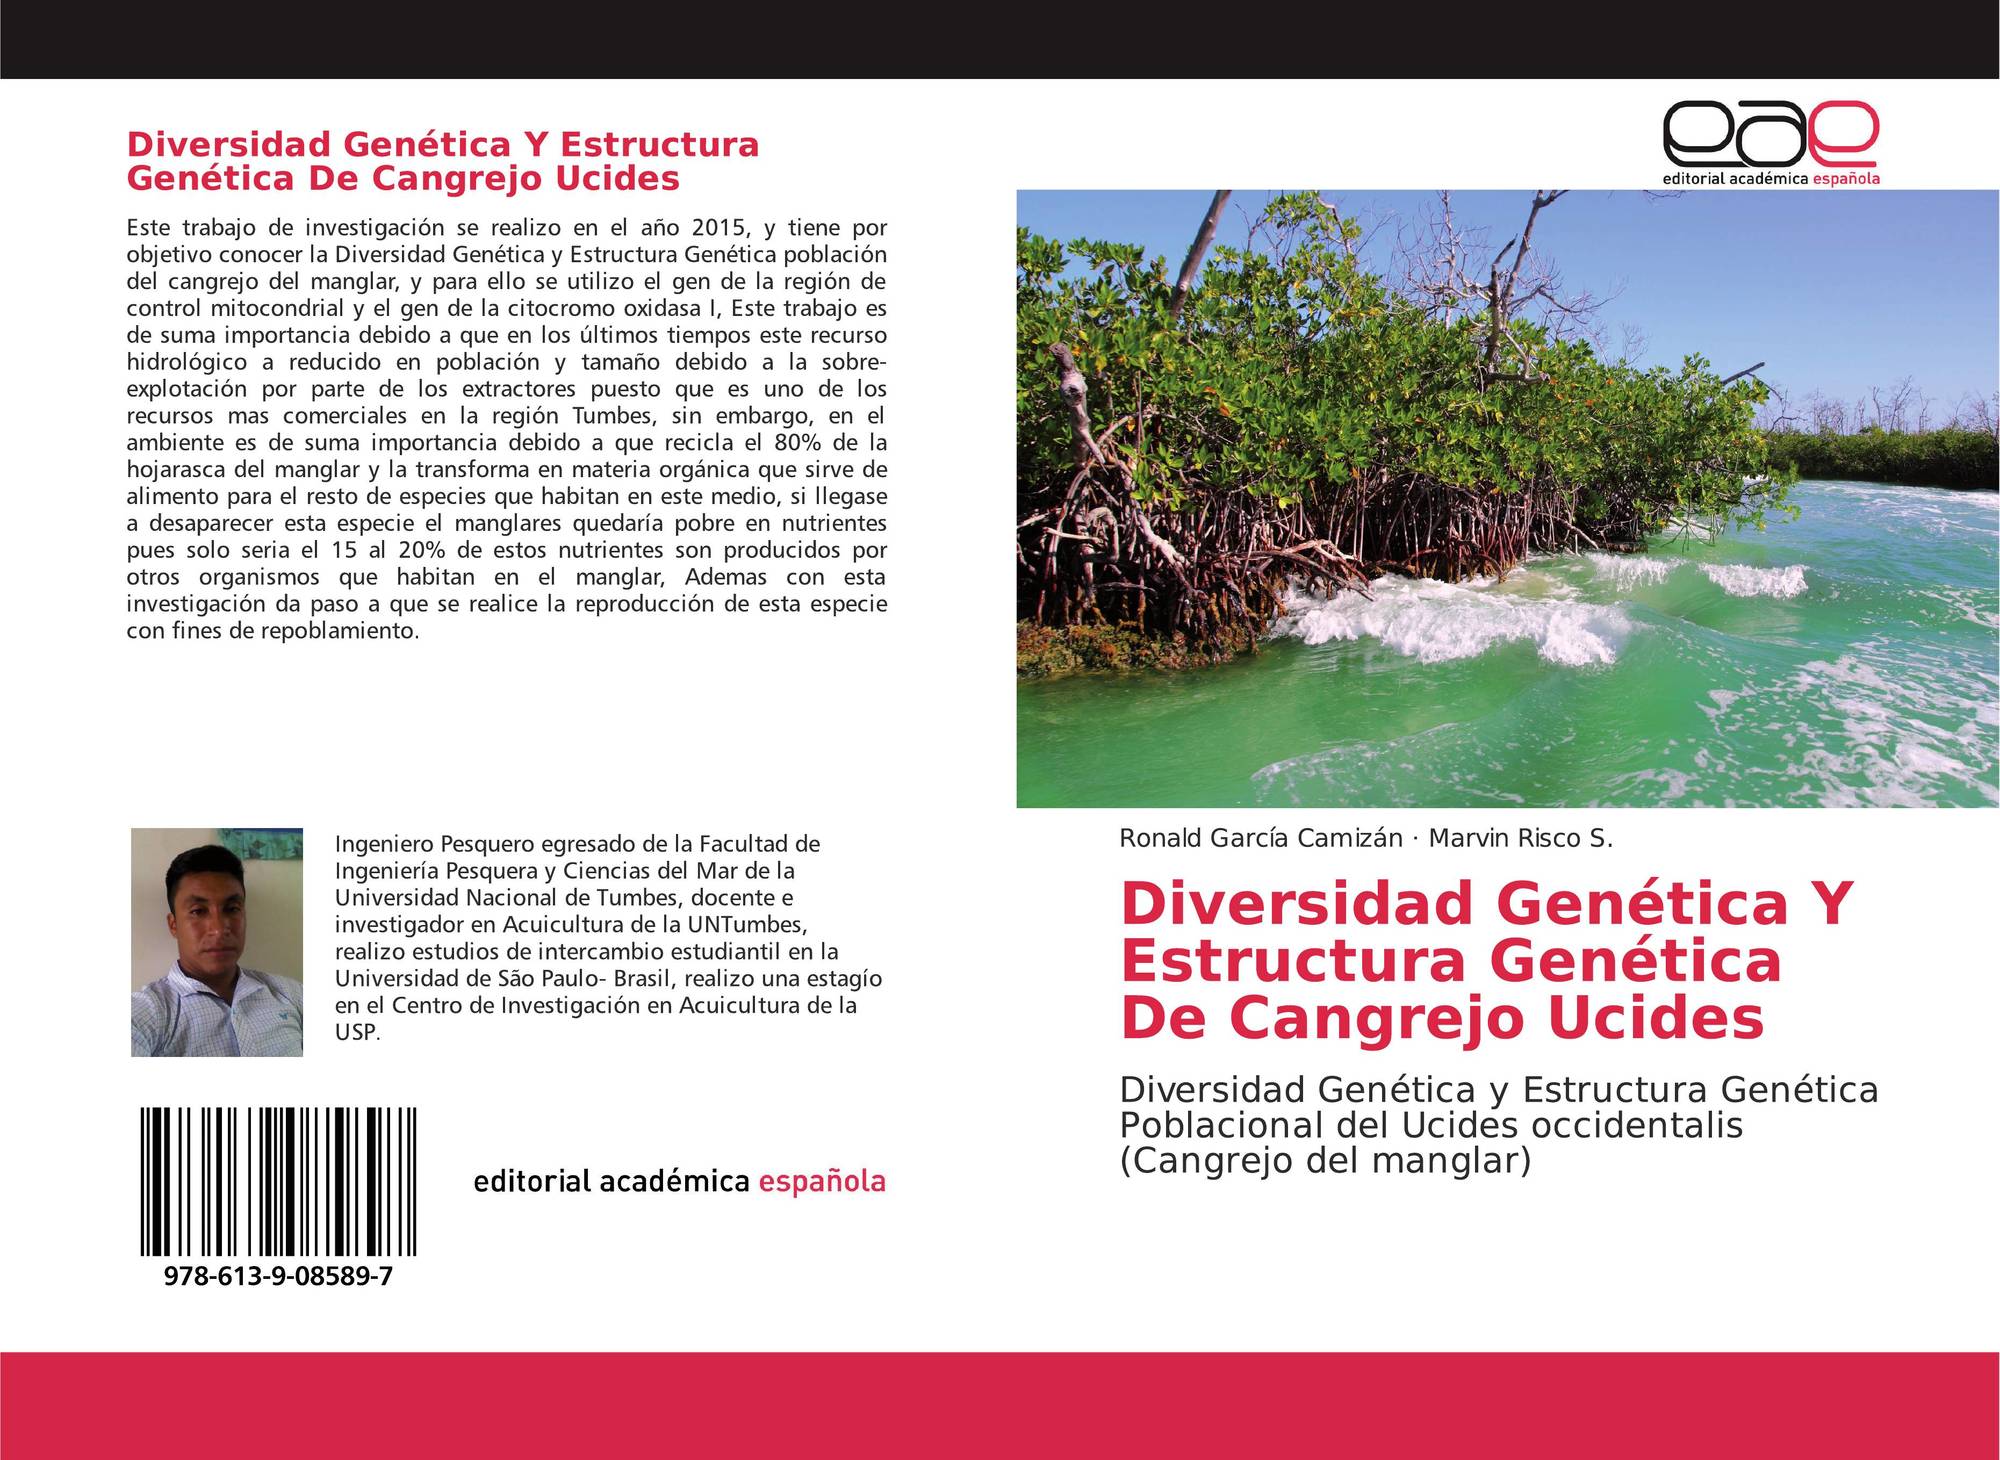 Diversidad Genetica Y Estructura Genetica De Cangrejo Ucides 978